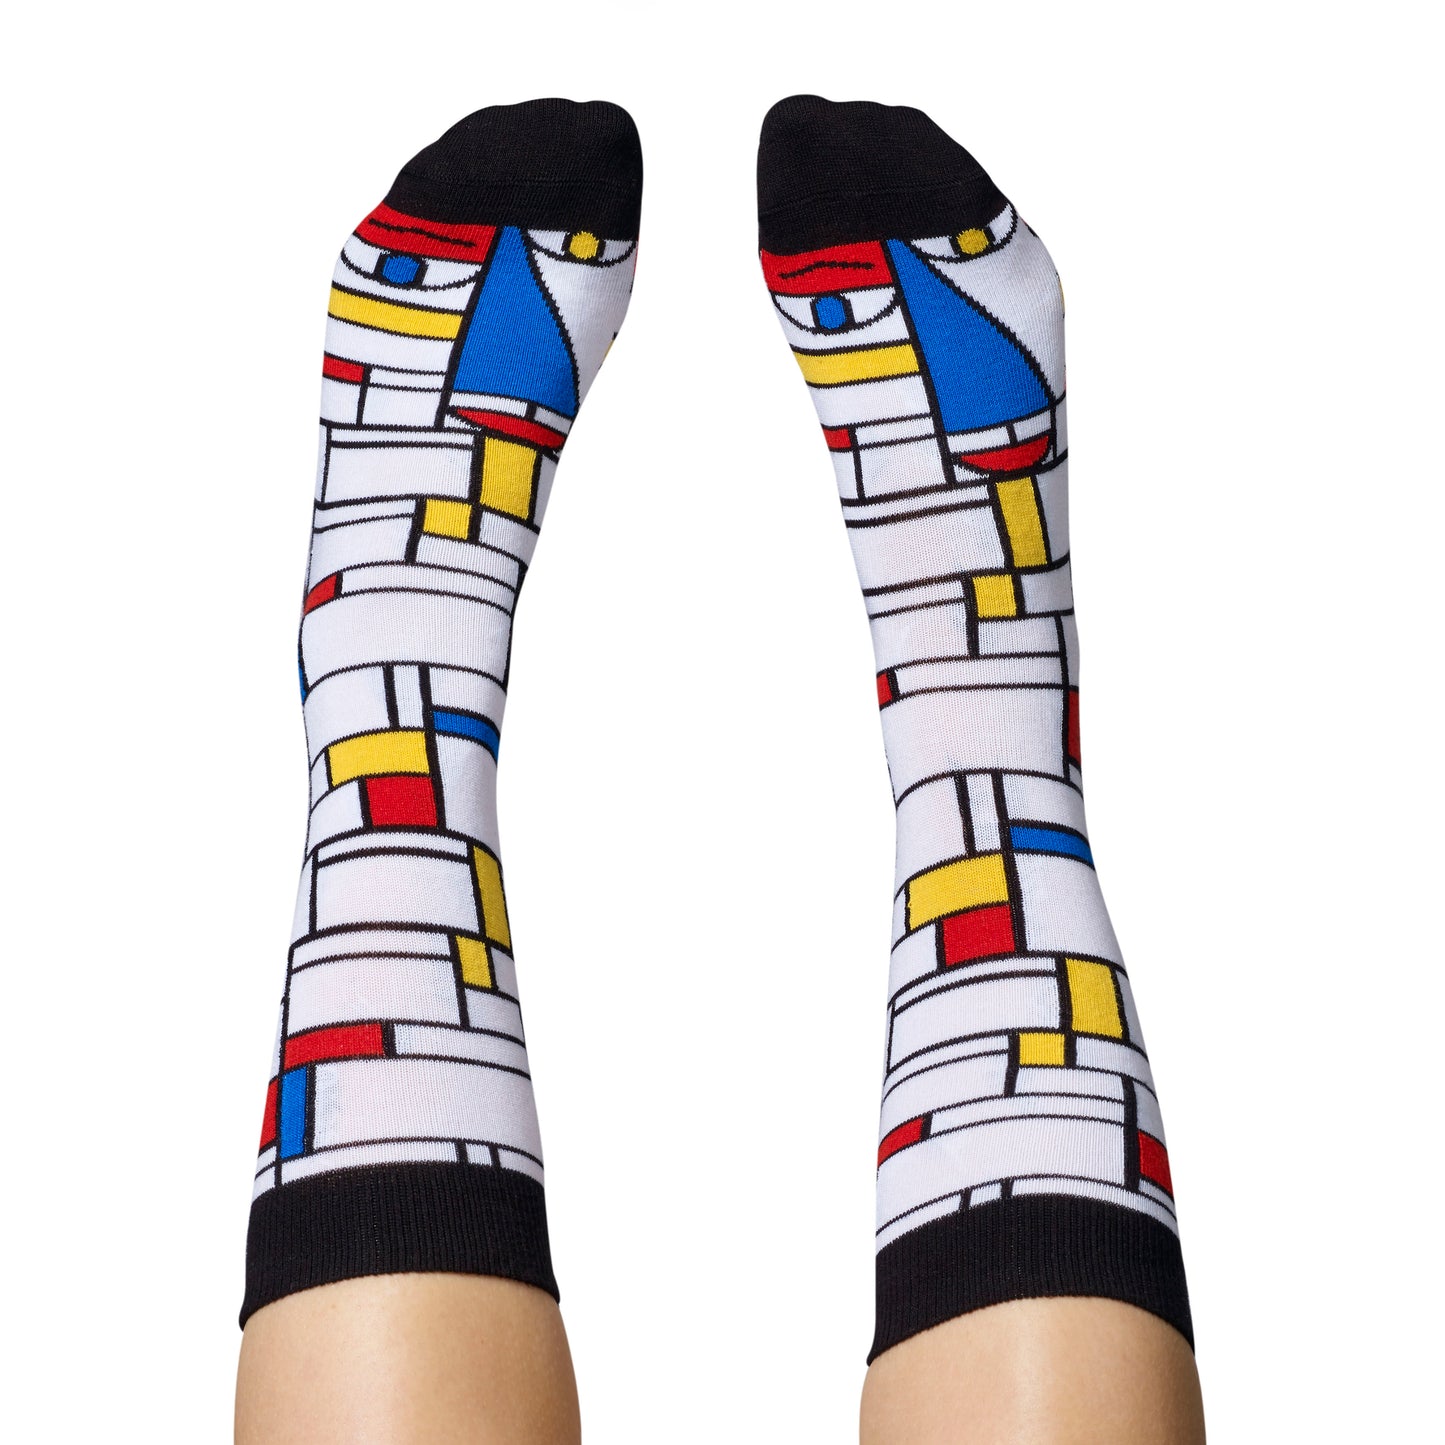 ChattyFeet - Feet Mondrian